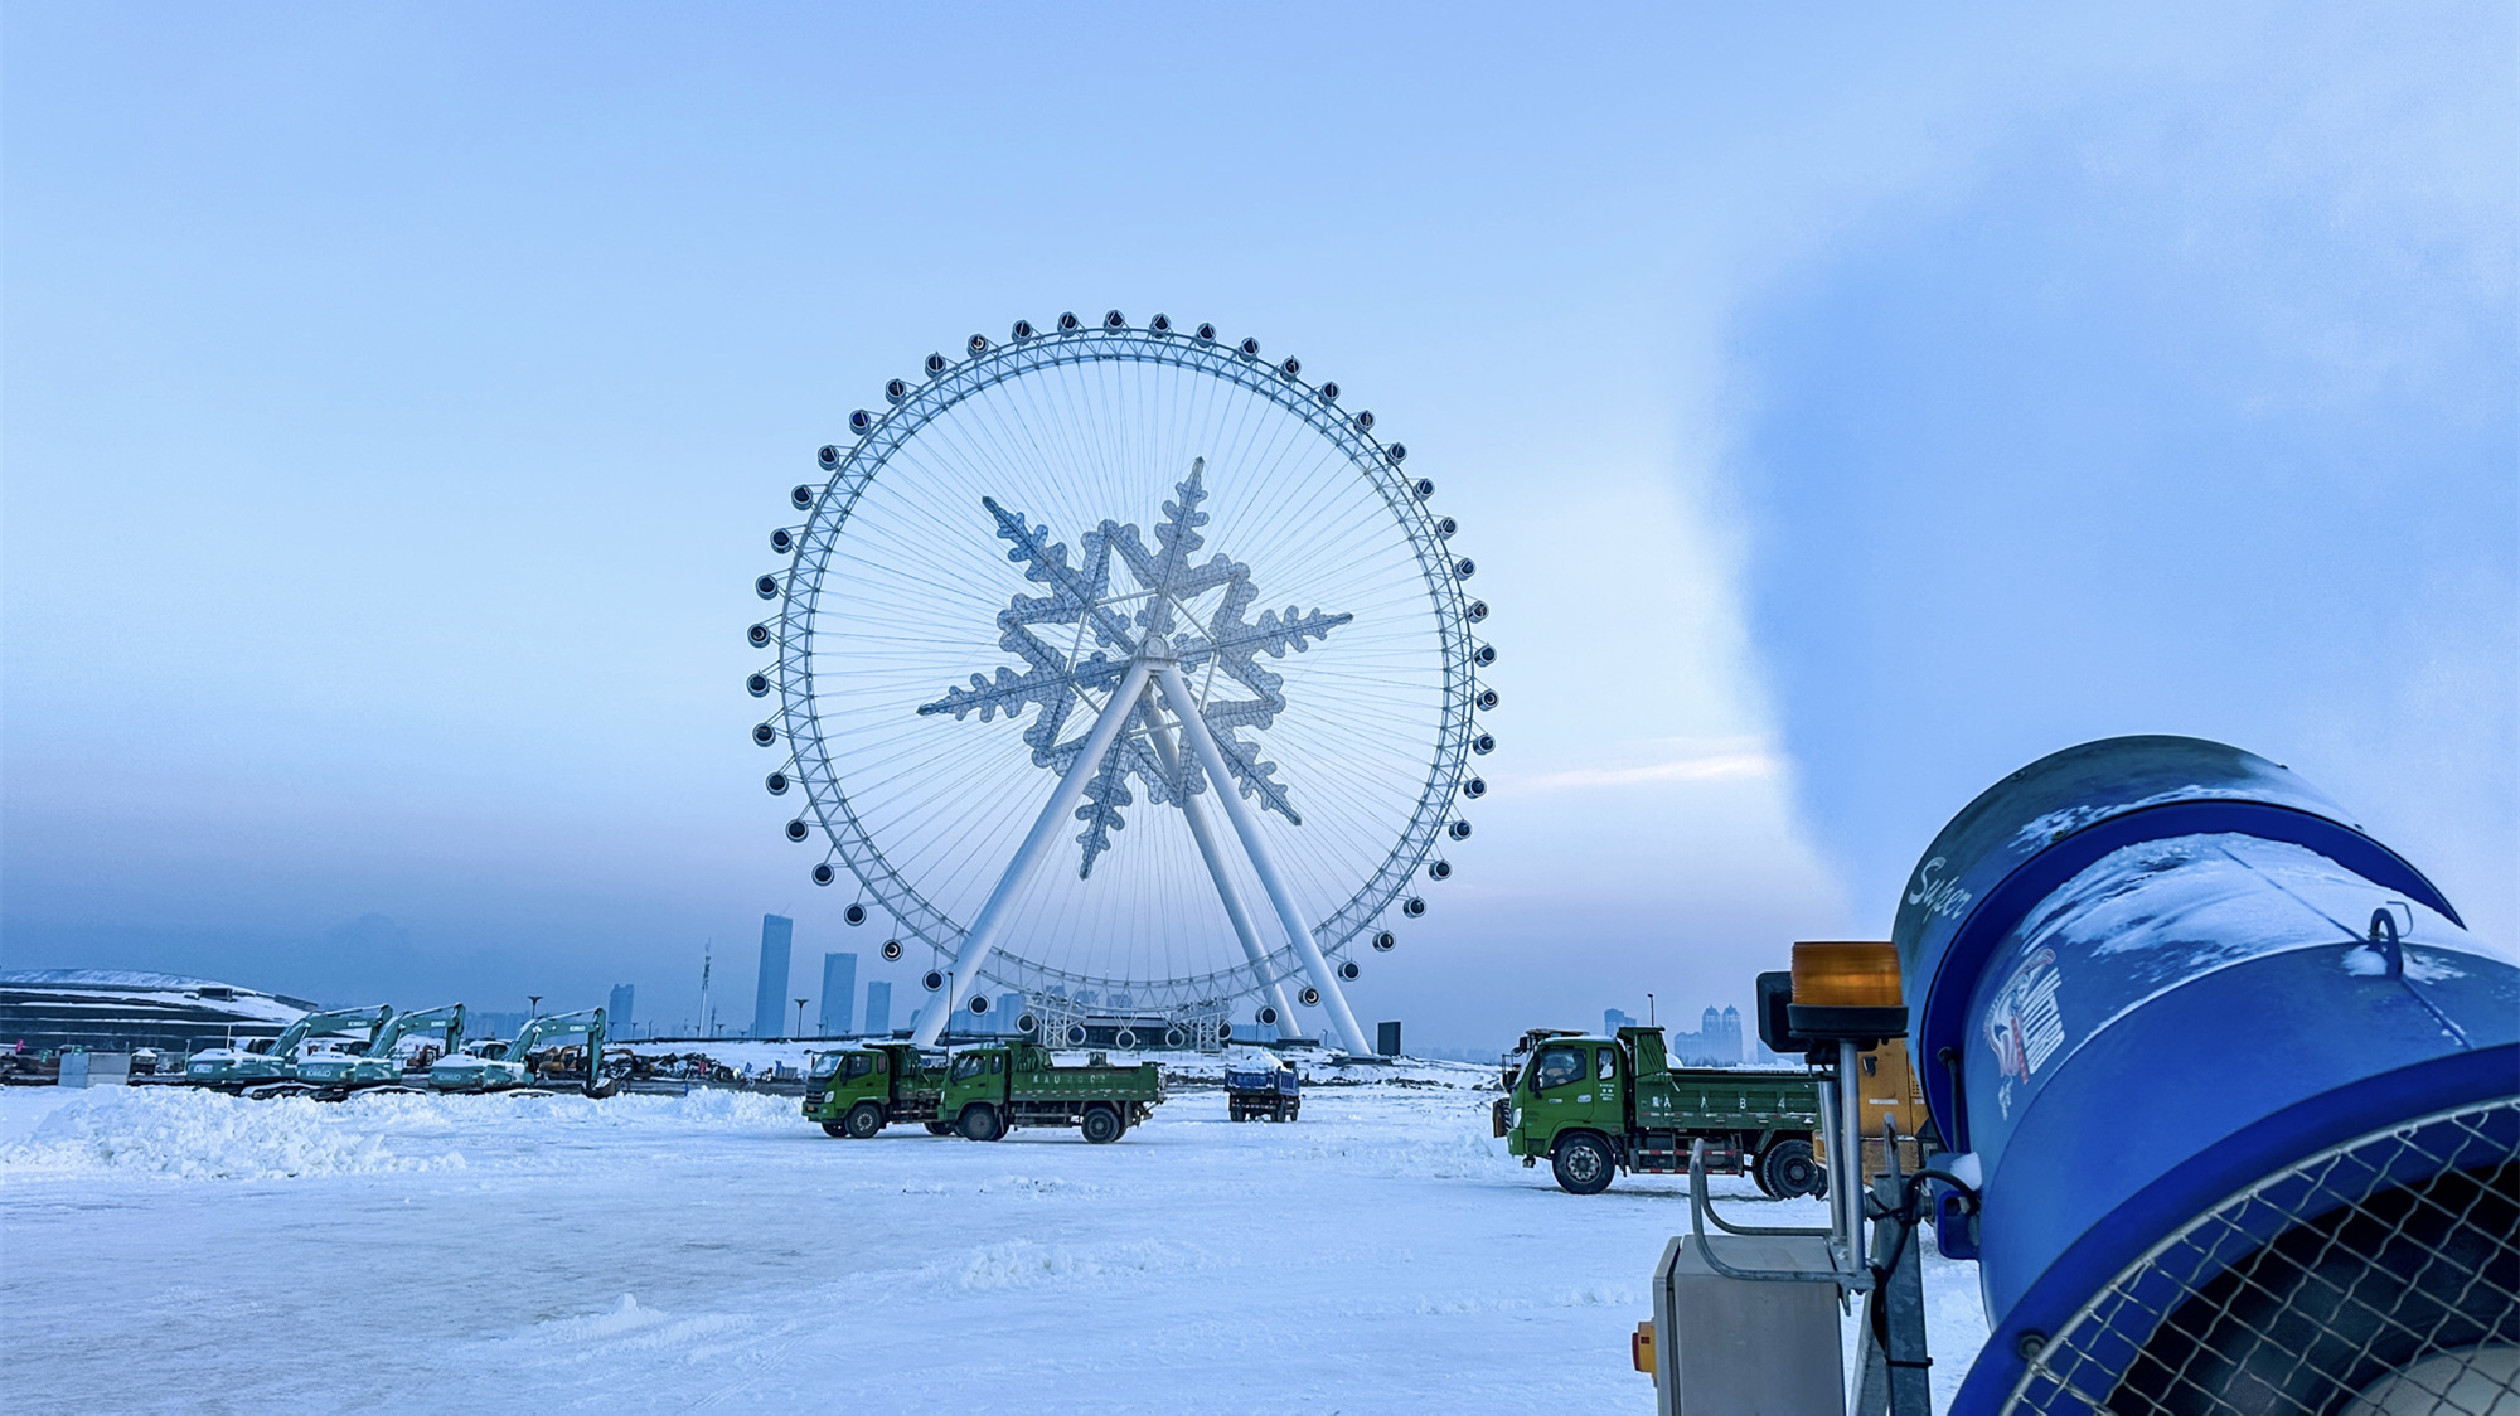 24小時運轉！哈爾濱冰雪大世界全面啟動造雪工作